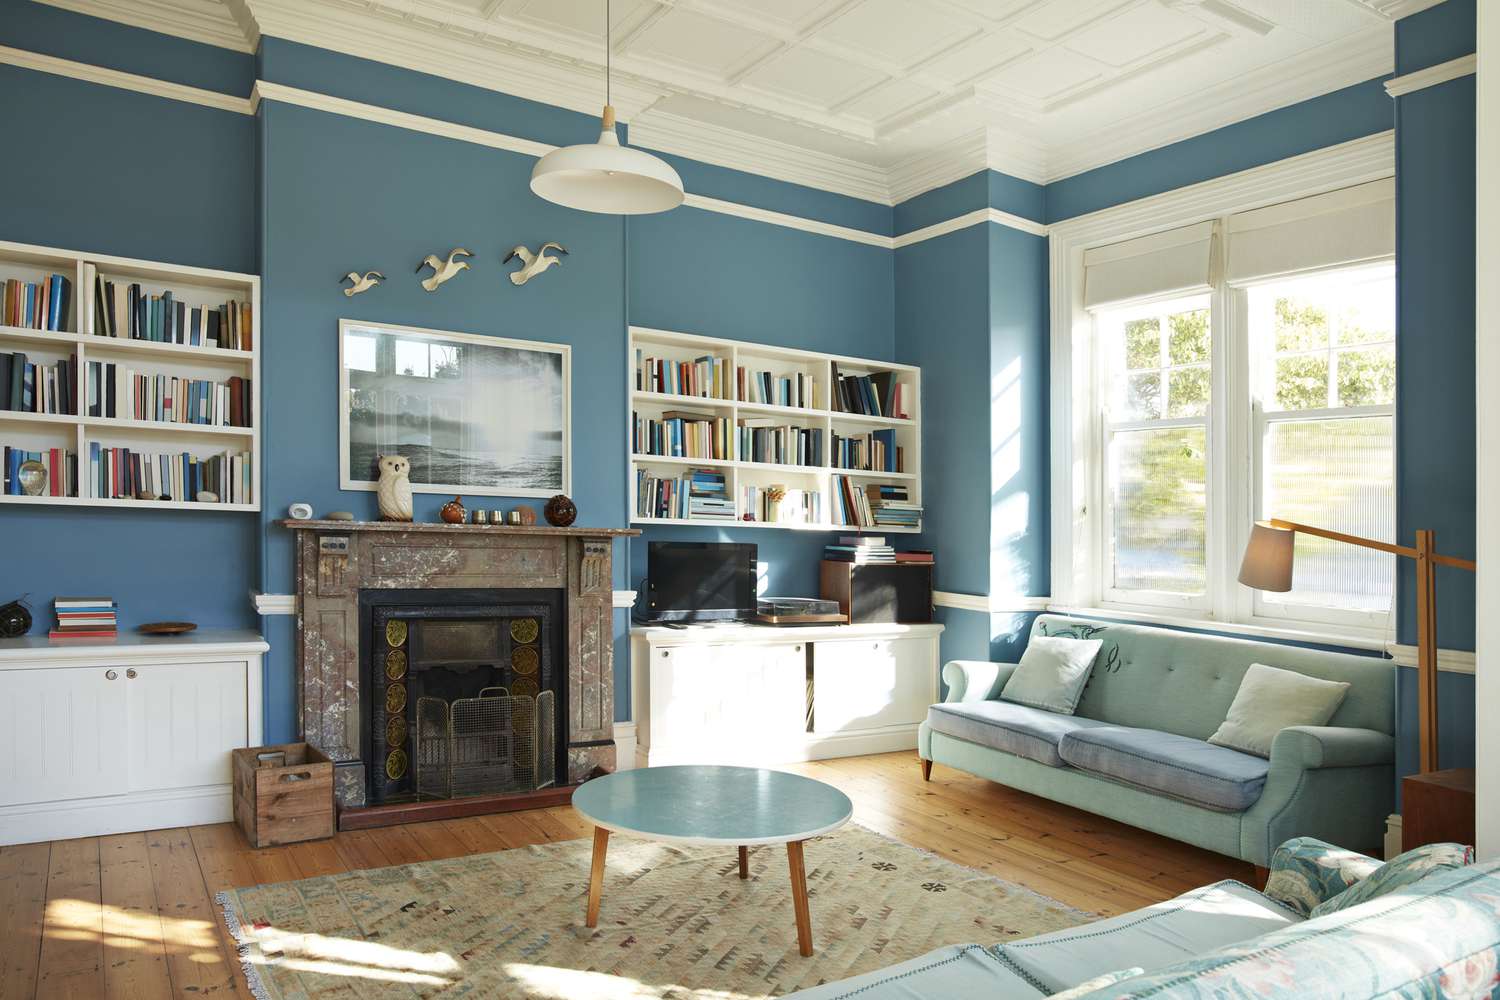 Dekoriertes Wohnzimmer mit tealfarbenen Wänden und Bücherregalen